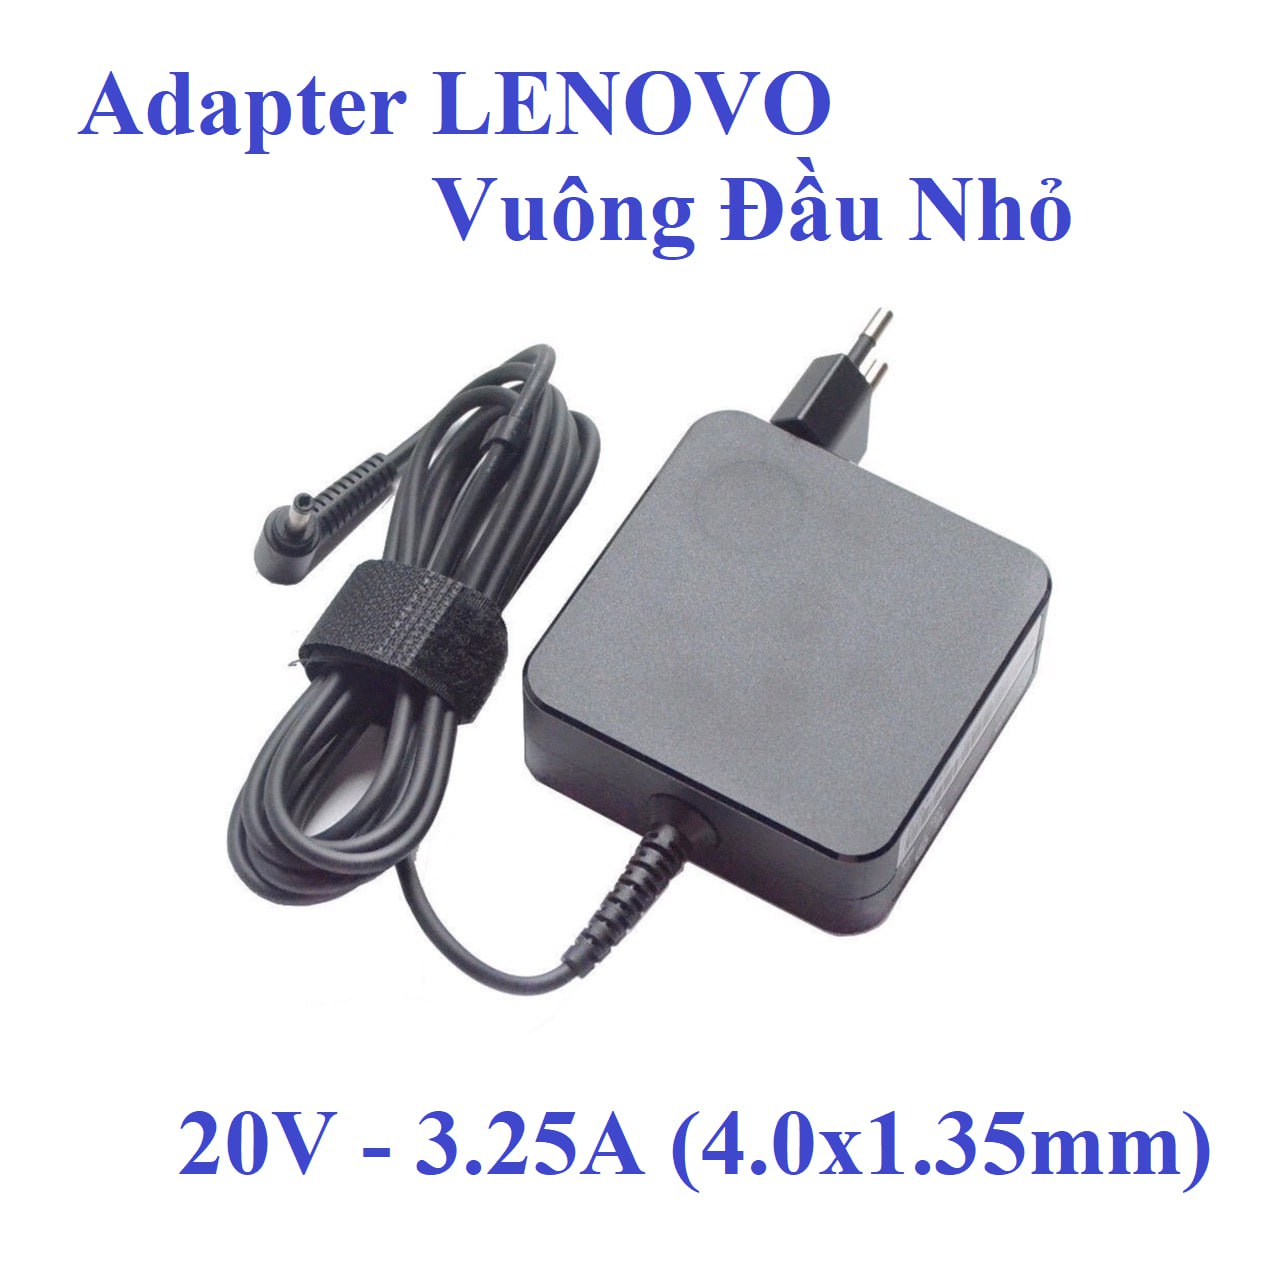 Adapter Apower for LENOVO 20V-3.25A Vuông Đầu nhỏ (4.0x1.35 mm, Kèm dây nguồn, Box)  THAY THẾ CHO 19V-2.25A 42W